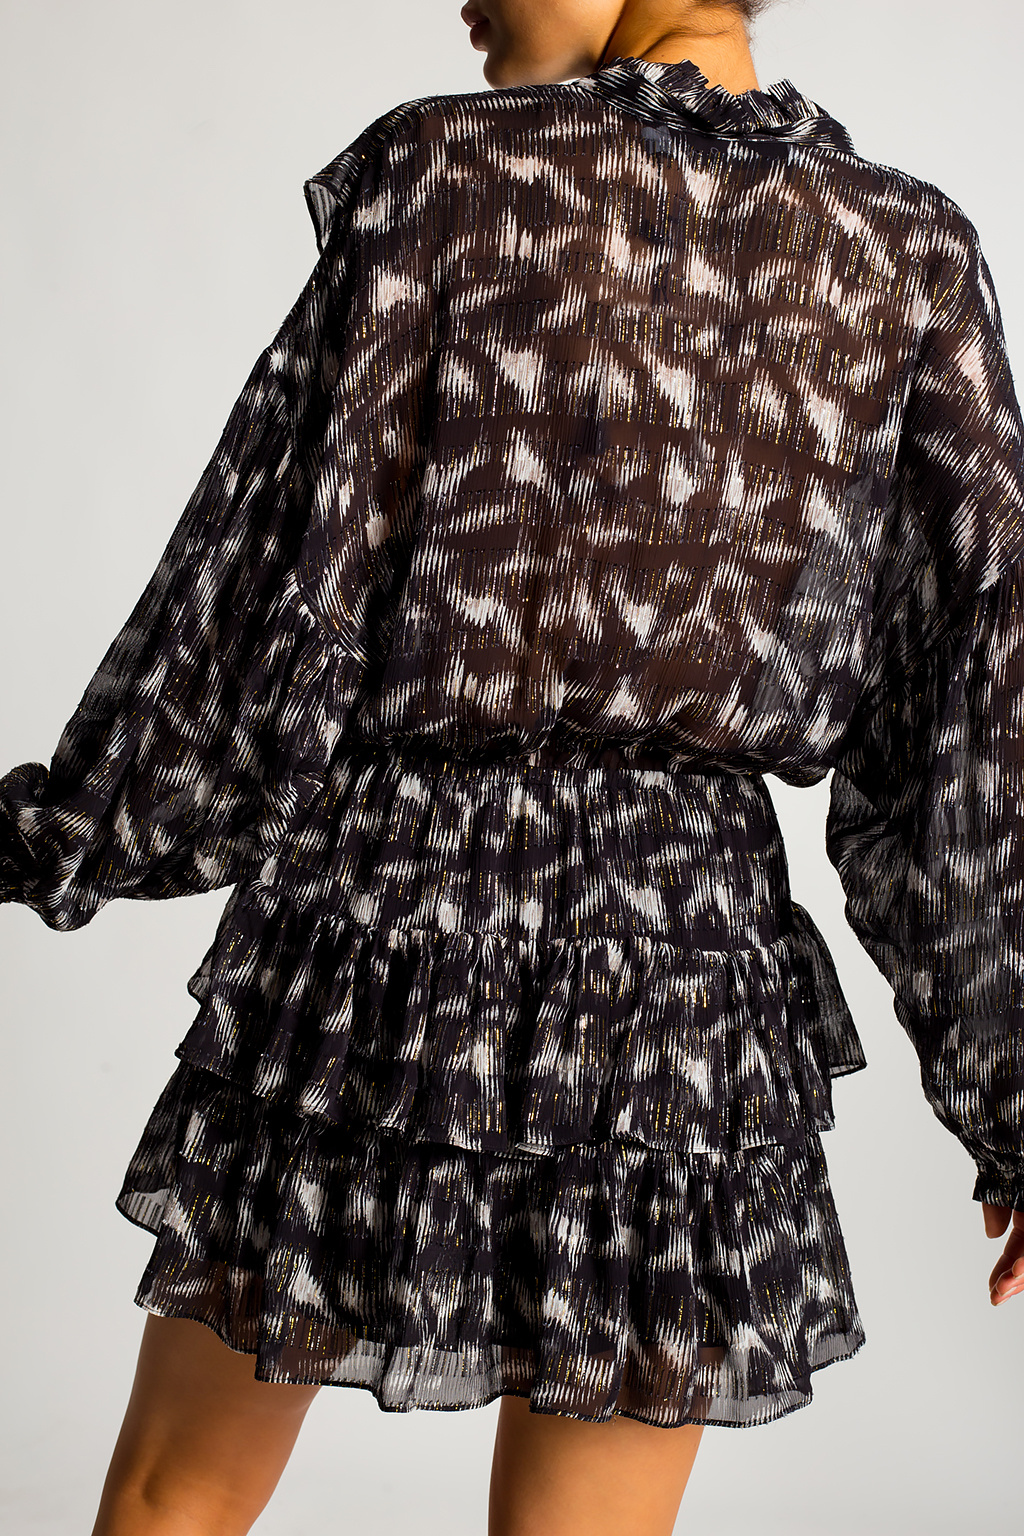 Iro Patterned dress with ruffles